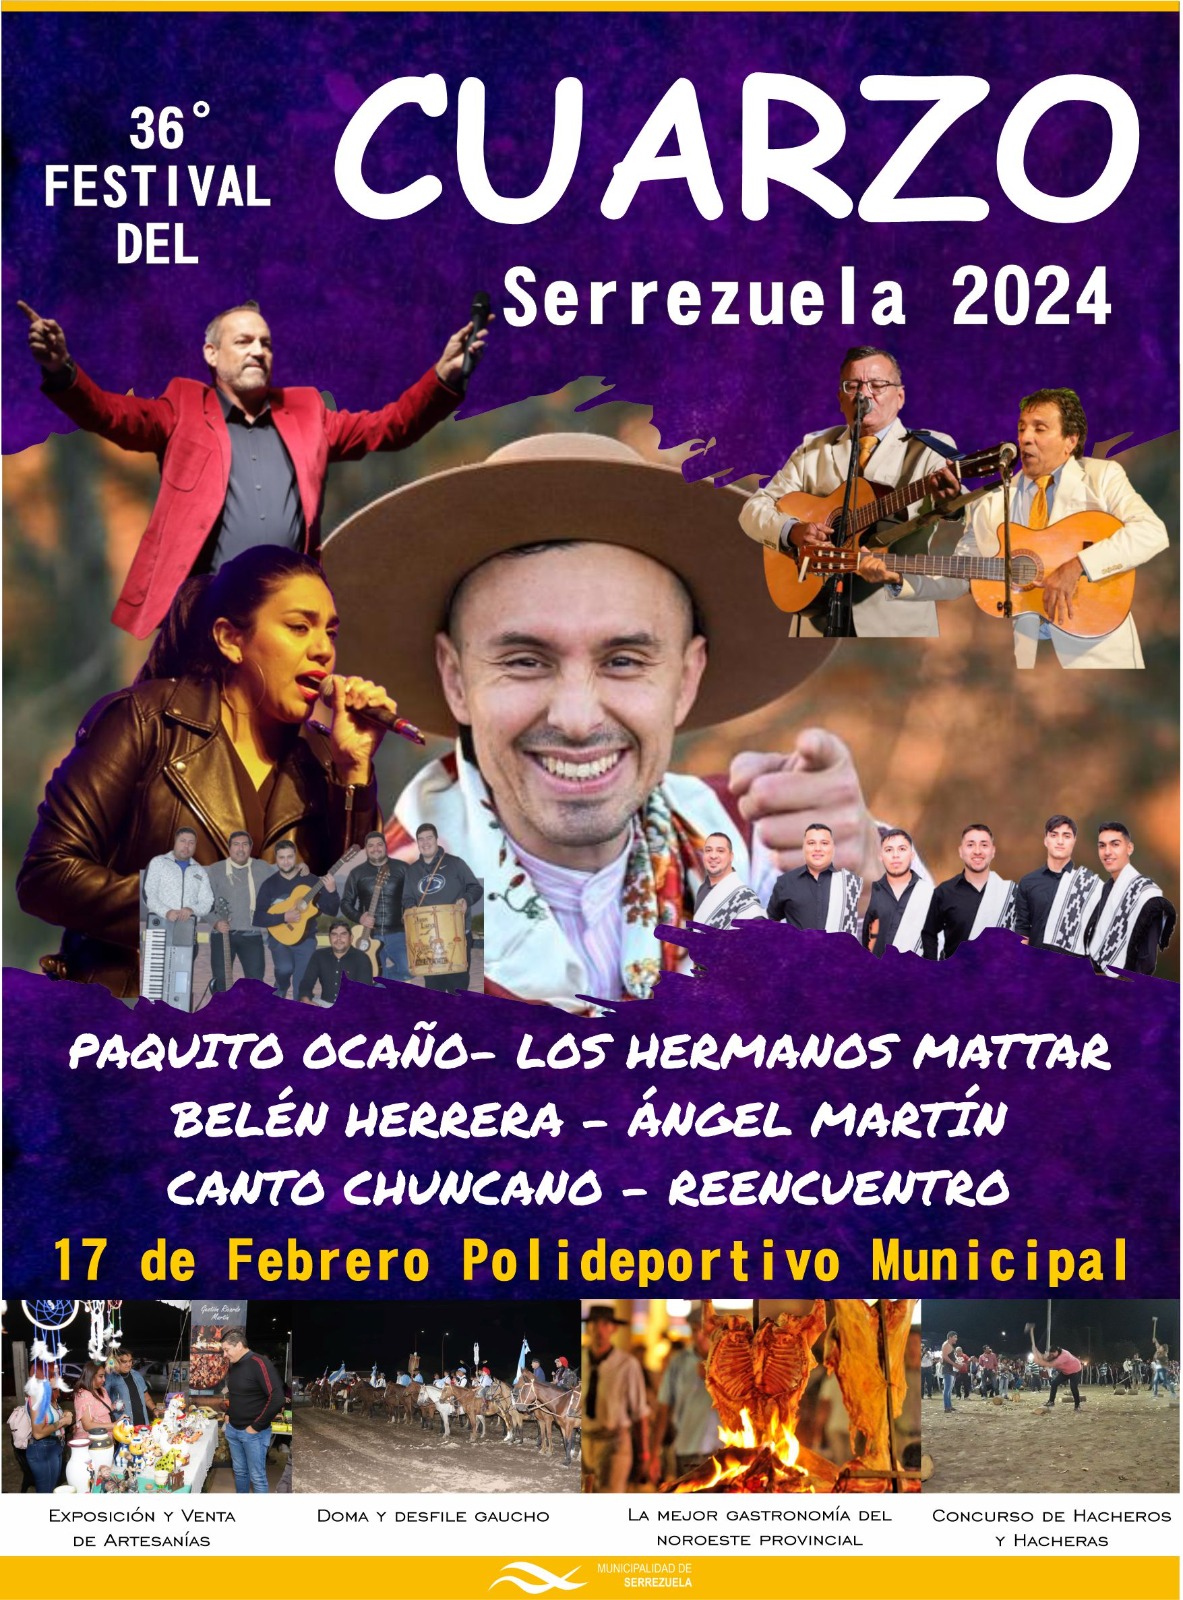 Llega la 36° edición del Festival del Cuarzo en Serrezuela • Canal C